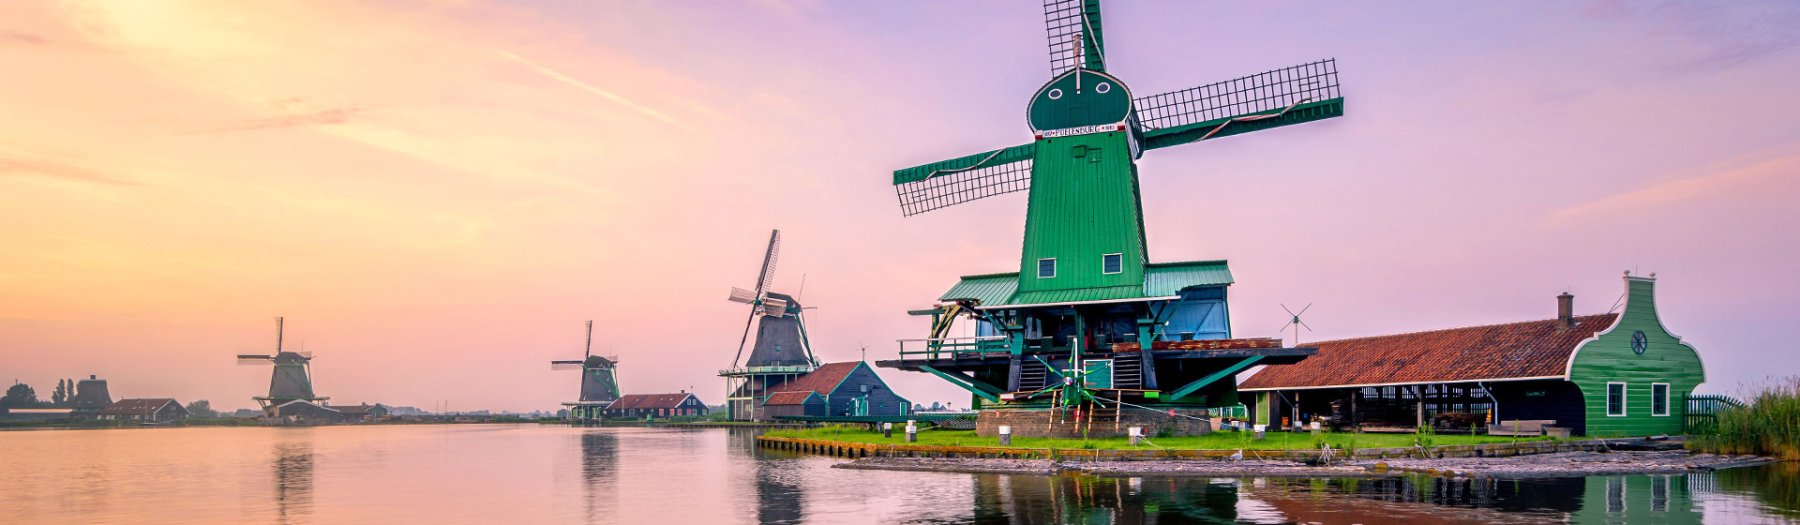 67 schöne Ferienhäuser in Holland warten auf Dich